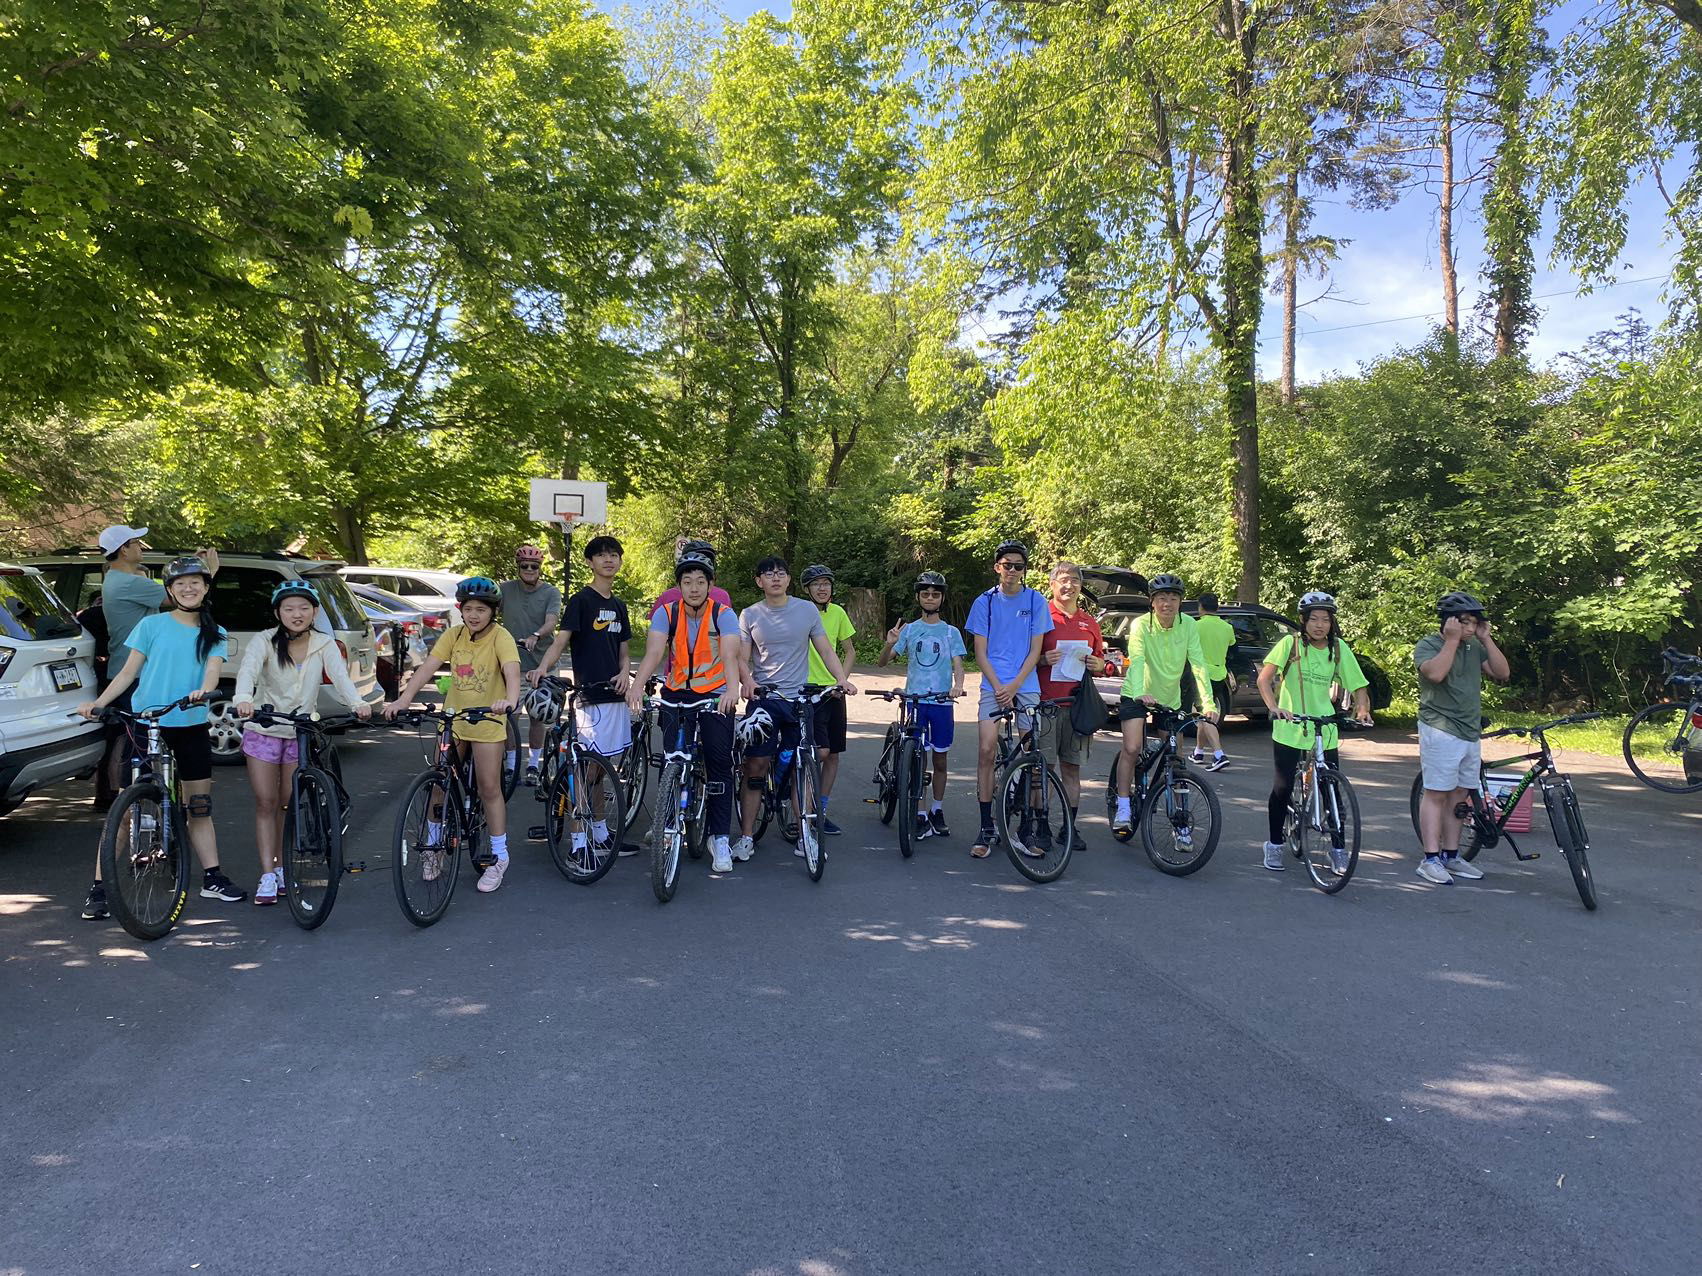 6/1-2 Youth Bike Trip